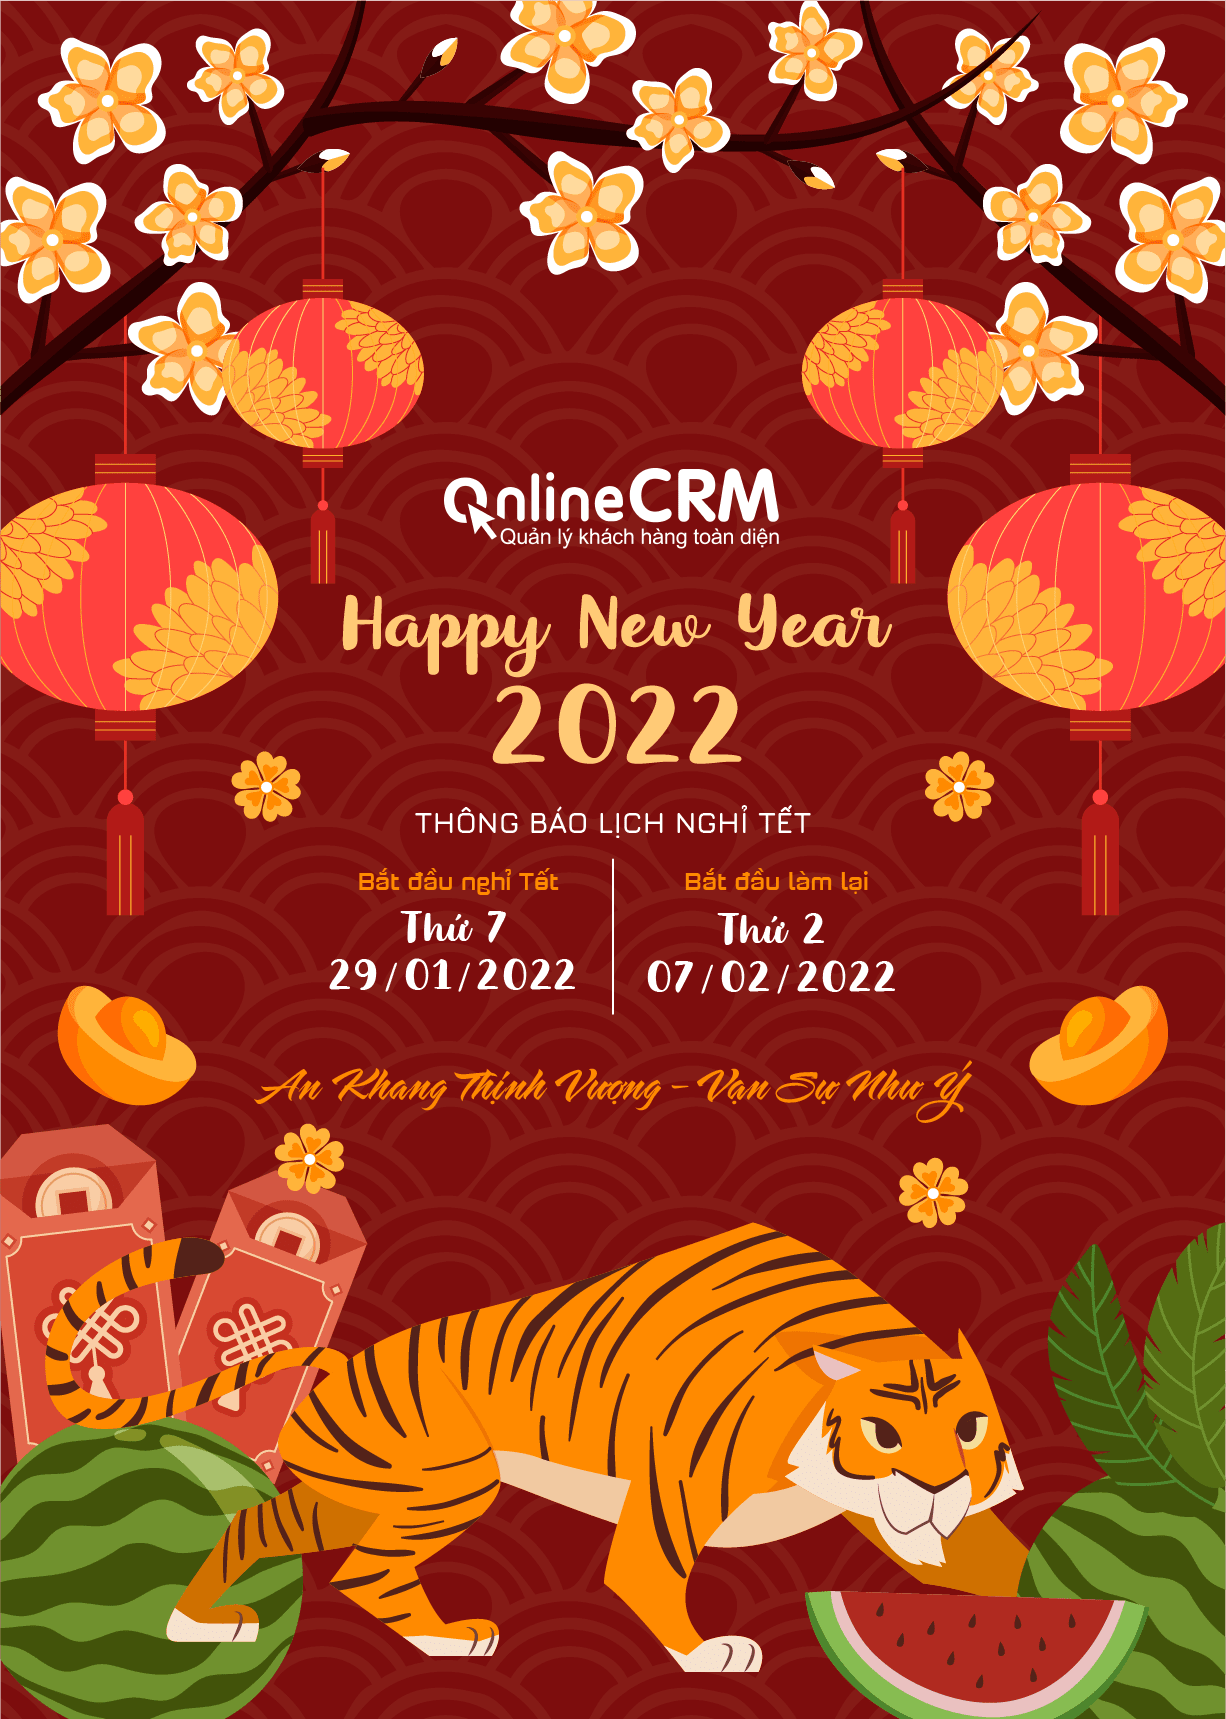 OnlineCRM thông báo lịch nghỉ Tết 2022